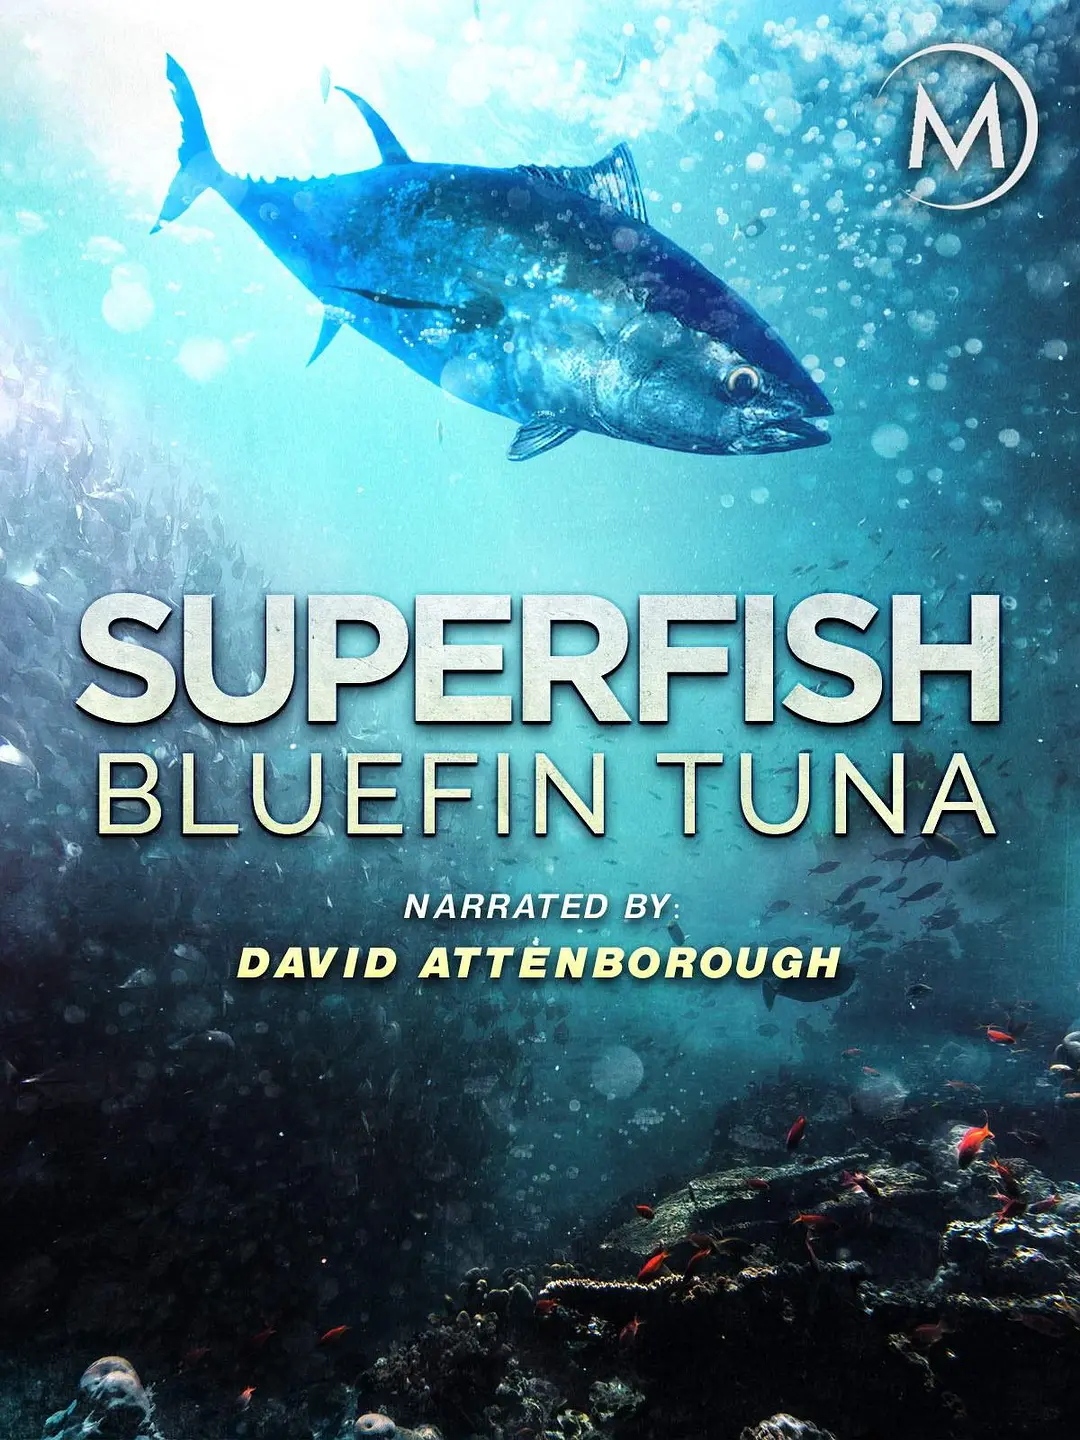 超级鱼类:蓝鳍金枪鱼